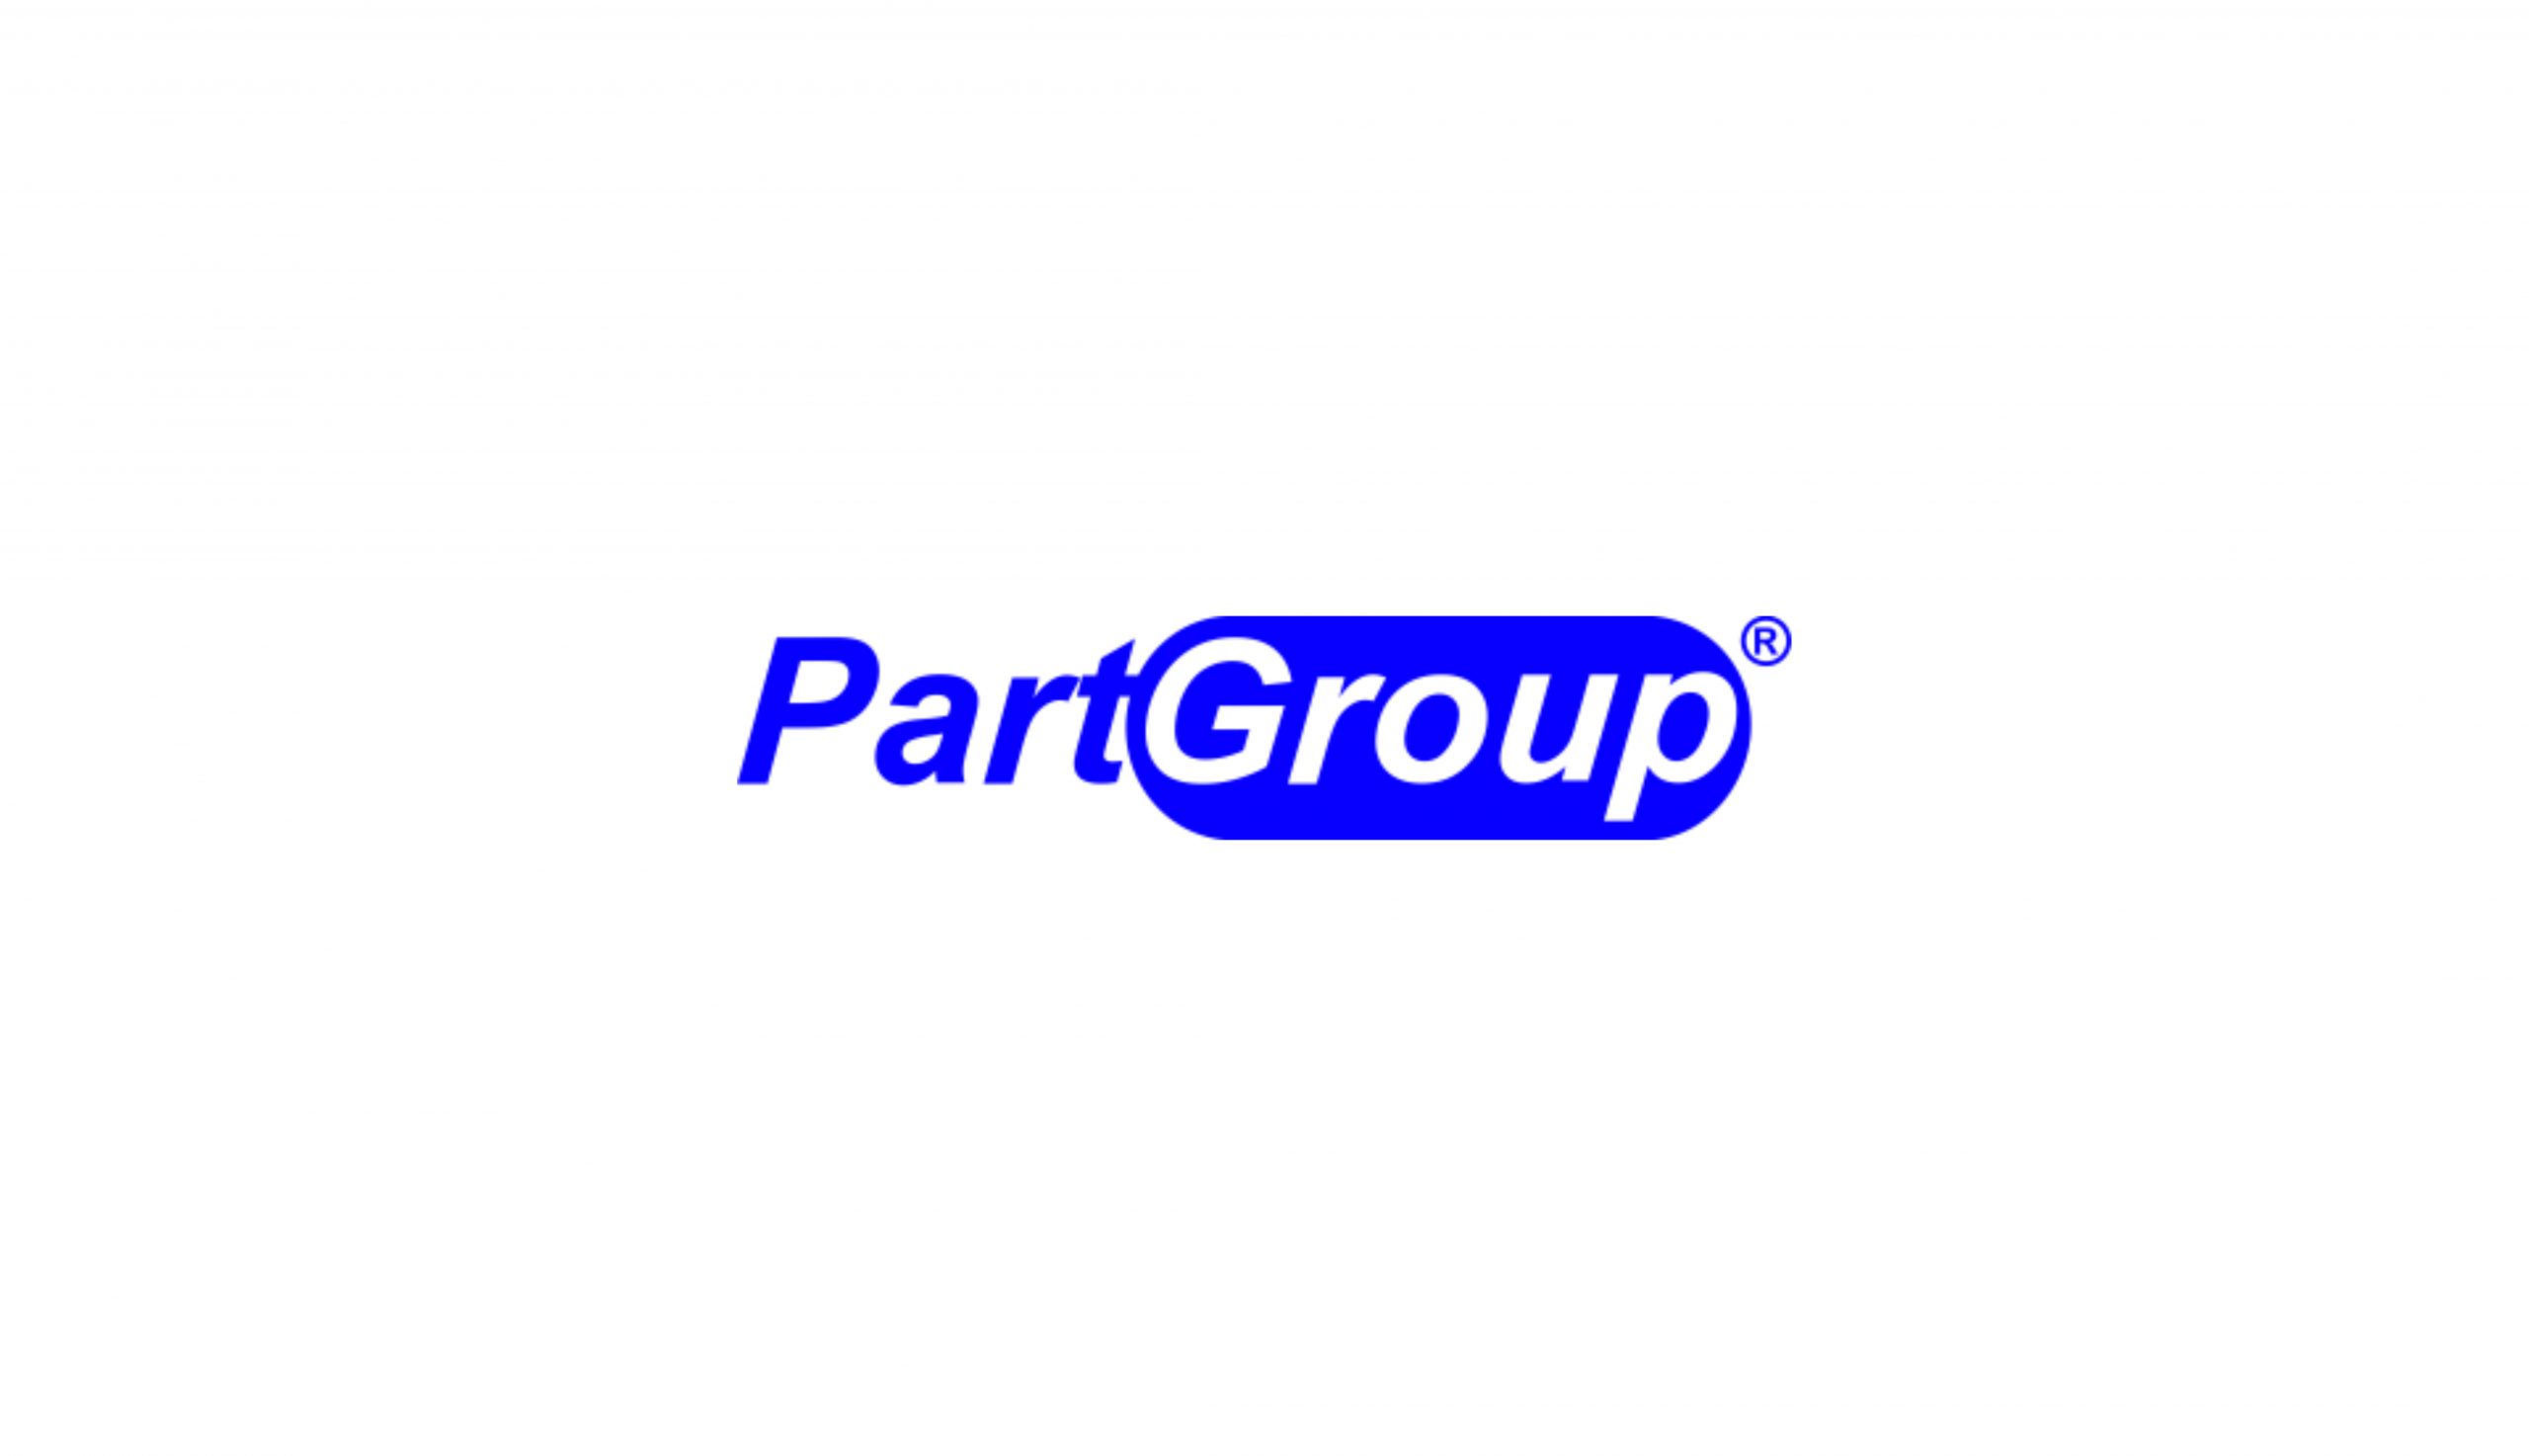 PartGroup integration trip - 02/29/03/2020